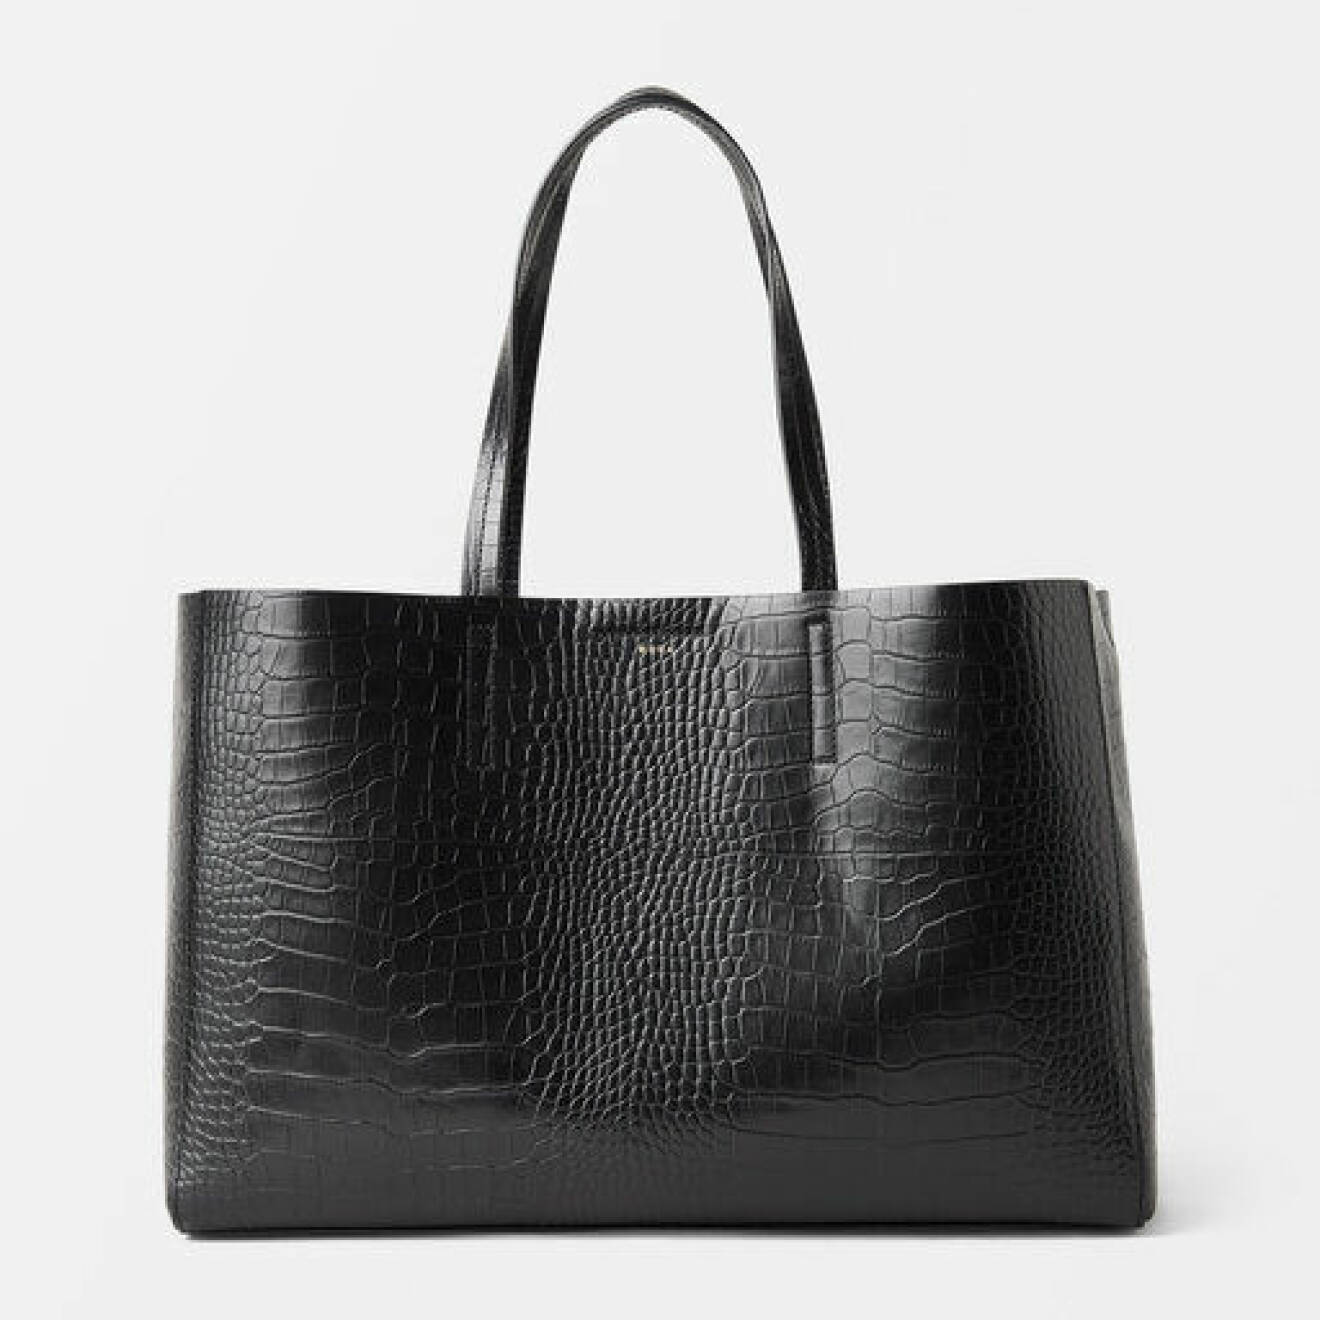 svart krokopräglad väska från Wera Åhléns